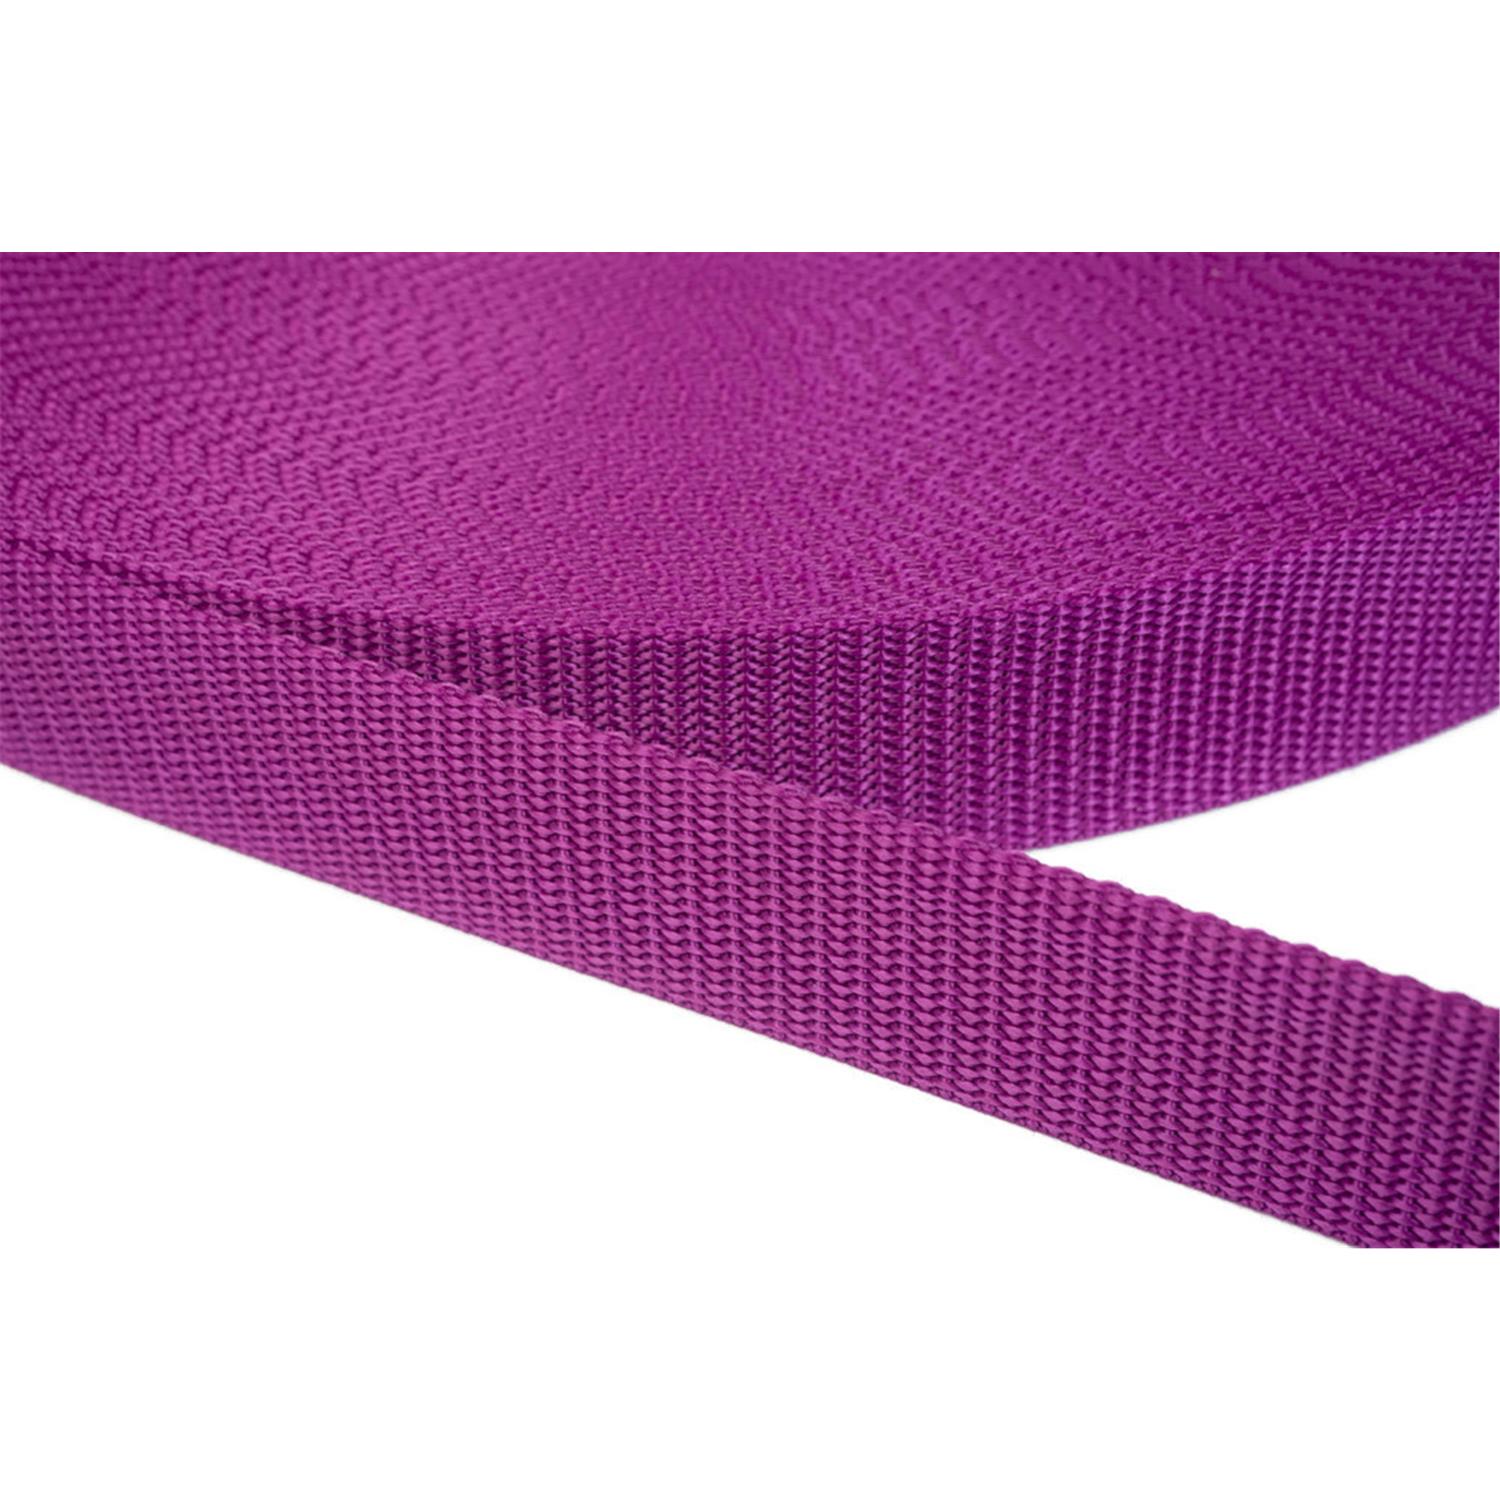 Gurtband 15mm breit aus Polypropylen in 41 Farben 22 - violettrot 12 Meter